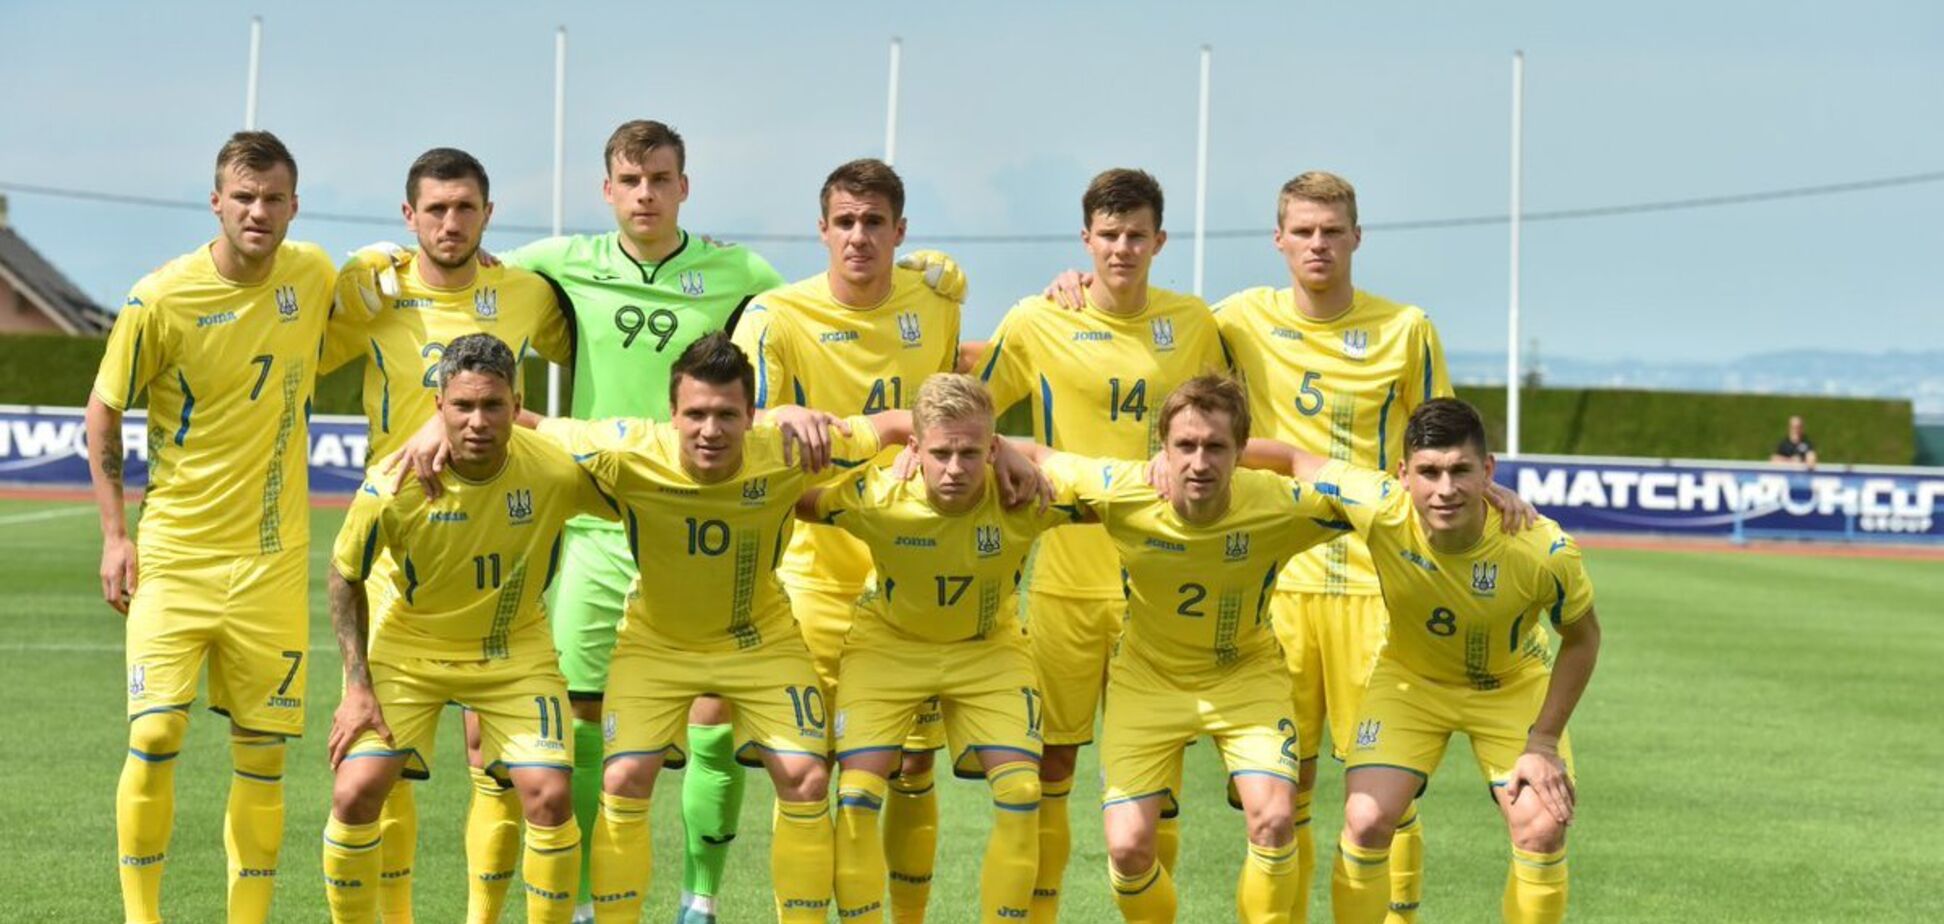 ФИФА изменила позицию Украины в новом рейтинге сборных